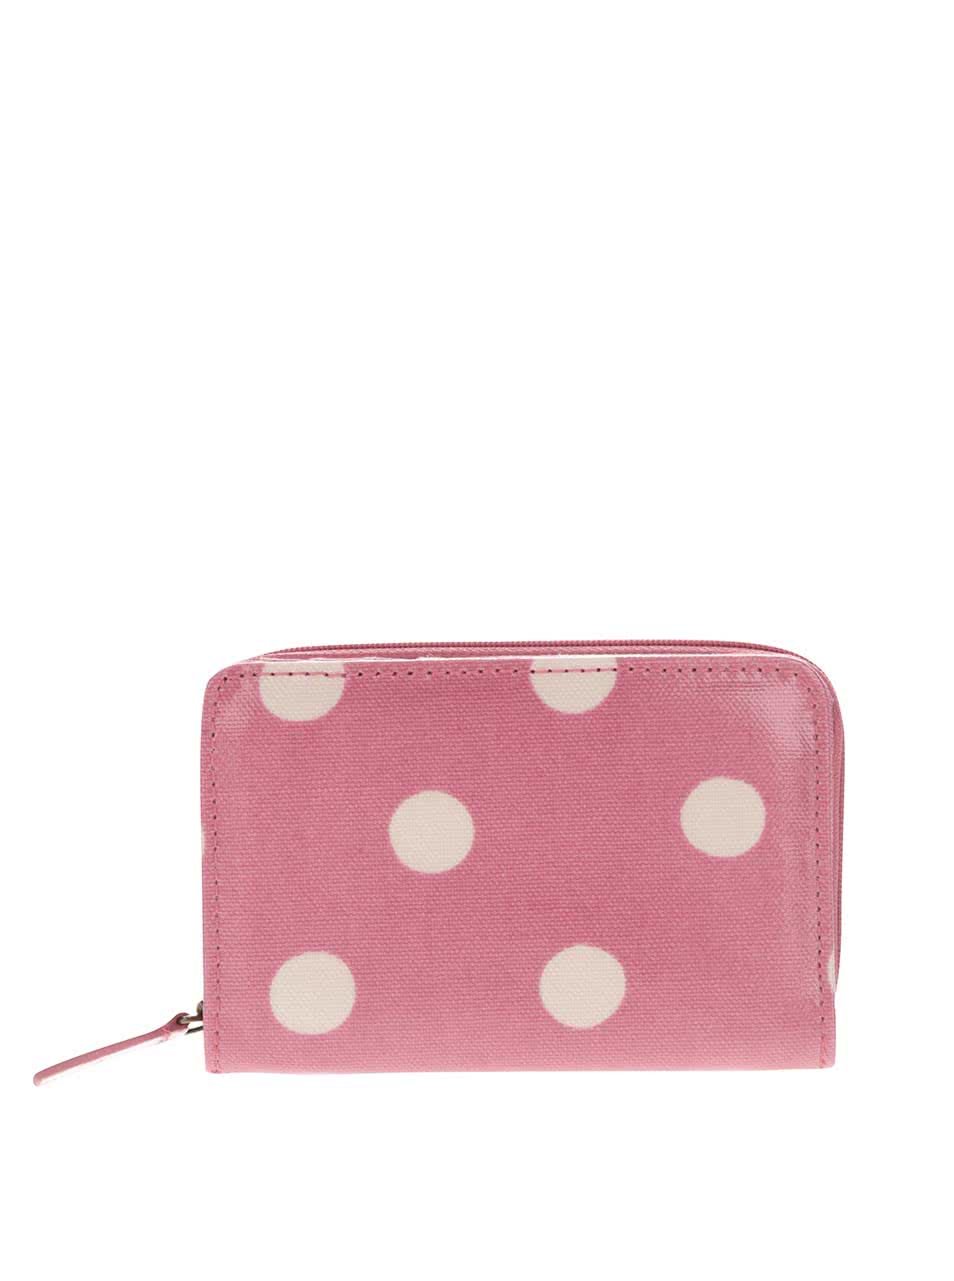 Růžová peněženka na zip s puntíky Cath Kidston